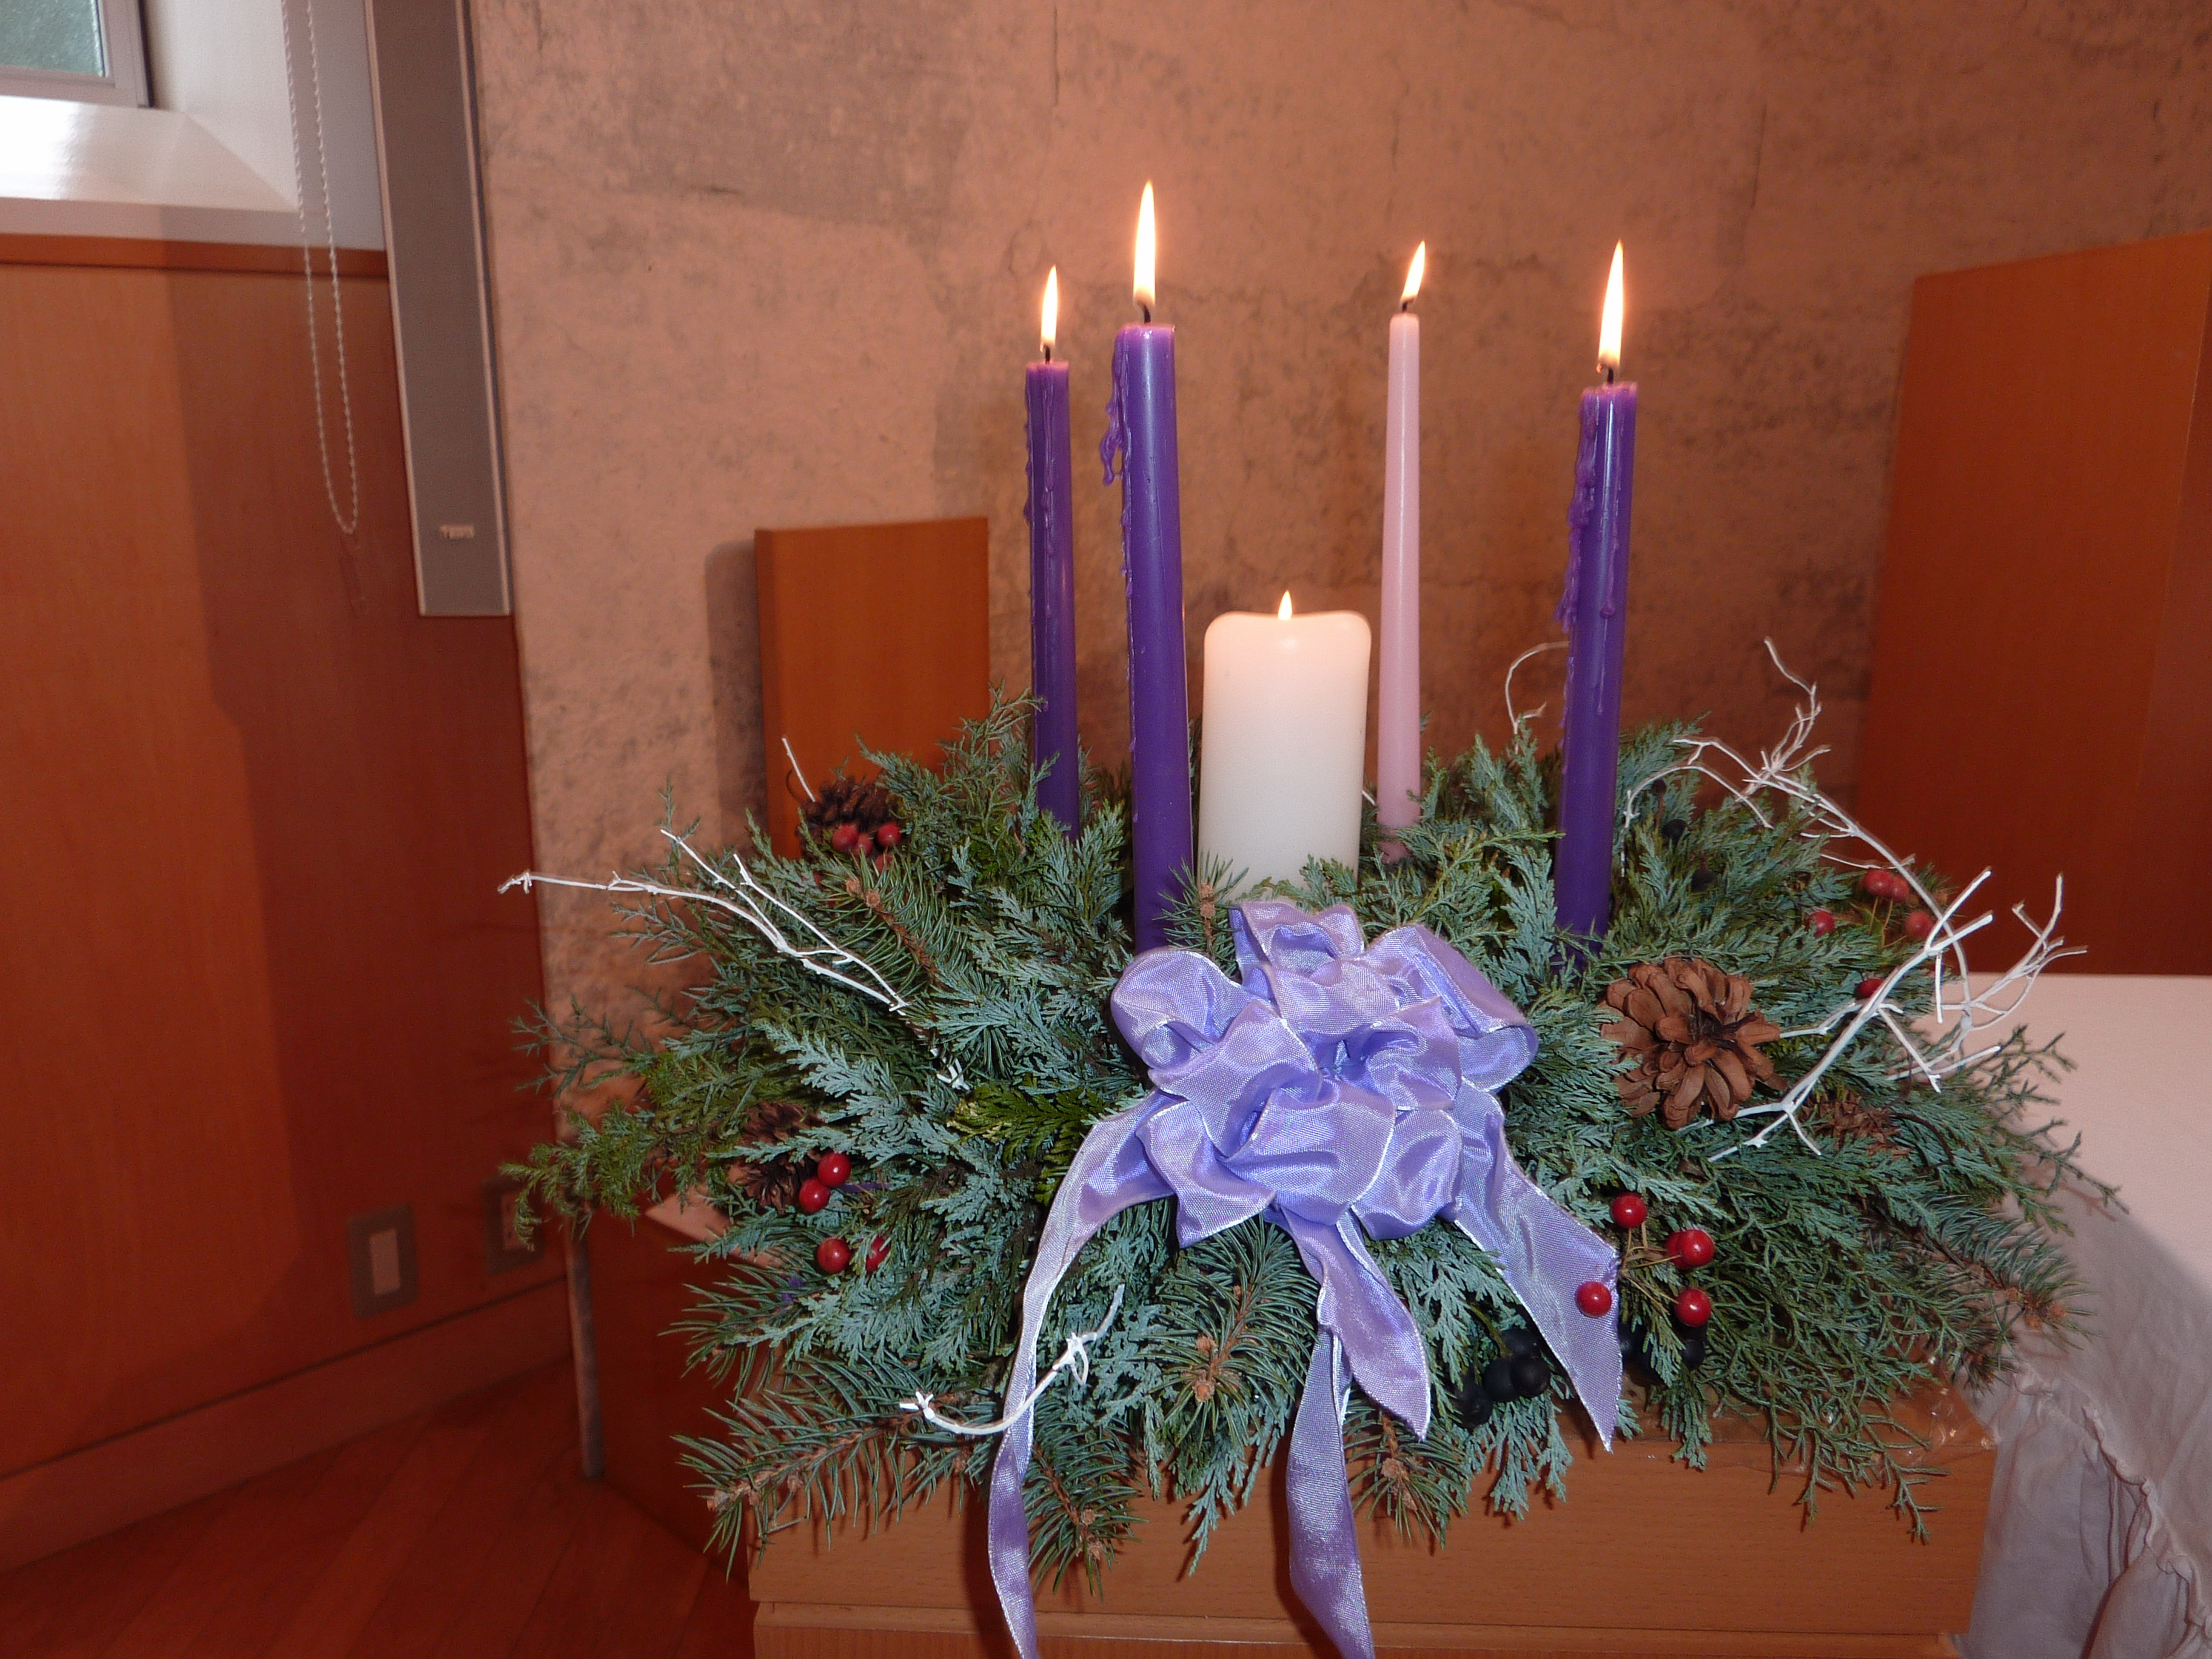 アドベントのろうそくの紫は私たちの罪の悔い改めを表します。クリスマスに中央のキリストのろうそくが灯されました。